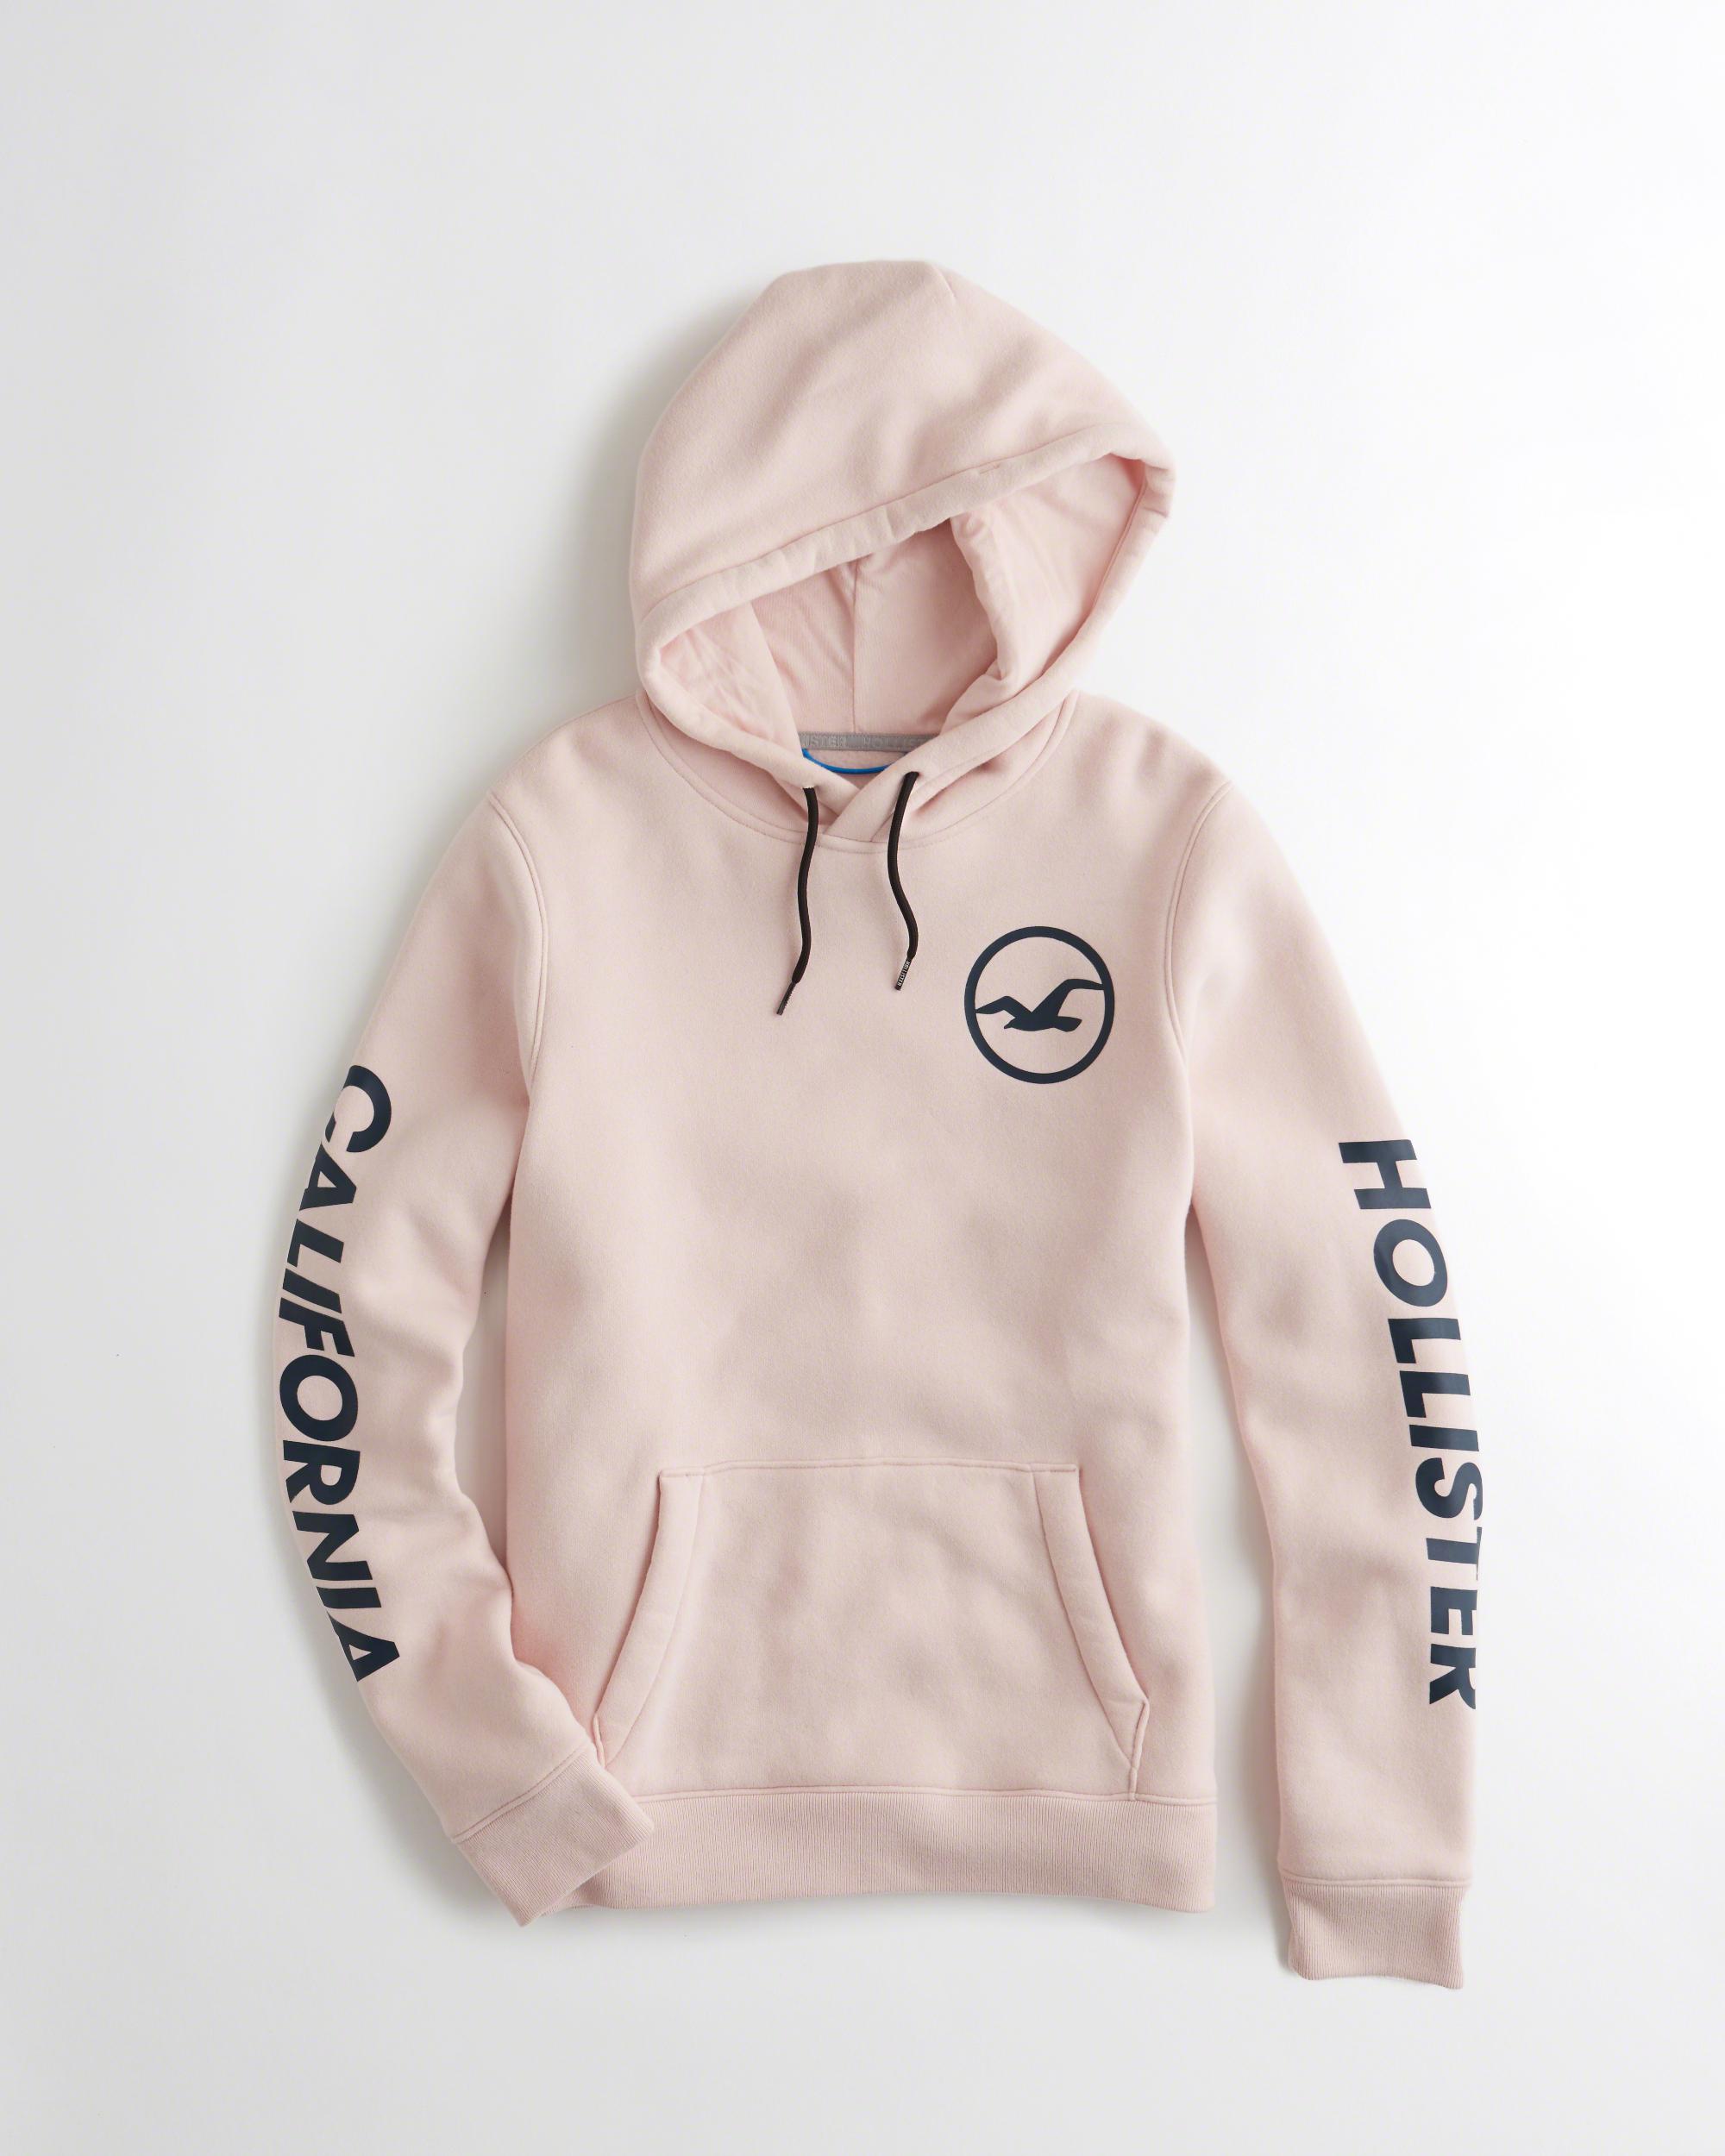 hollister mens pink hoodie